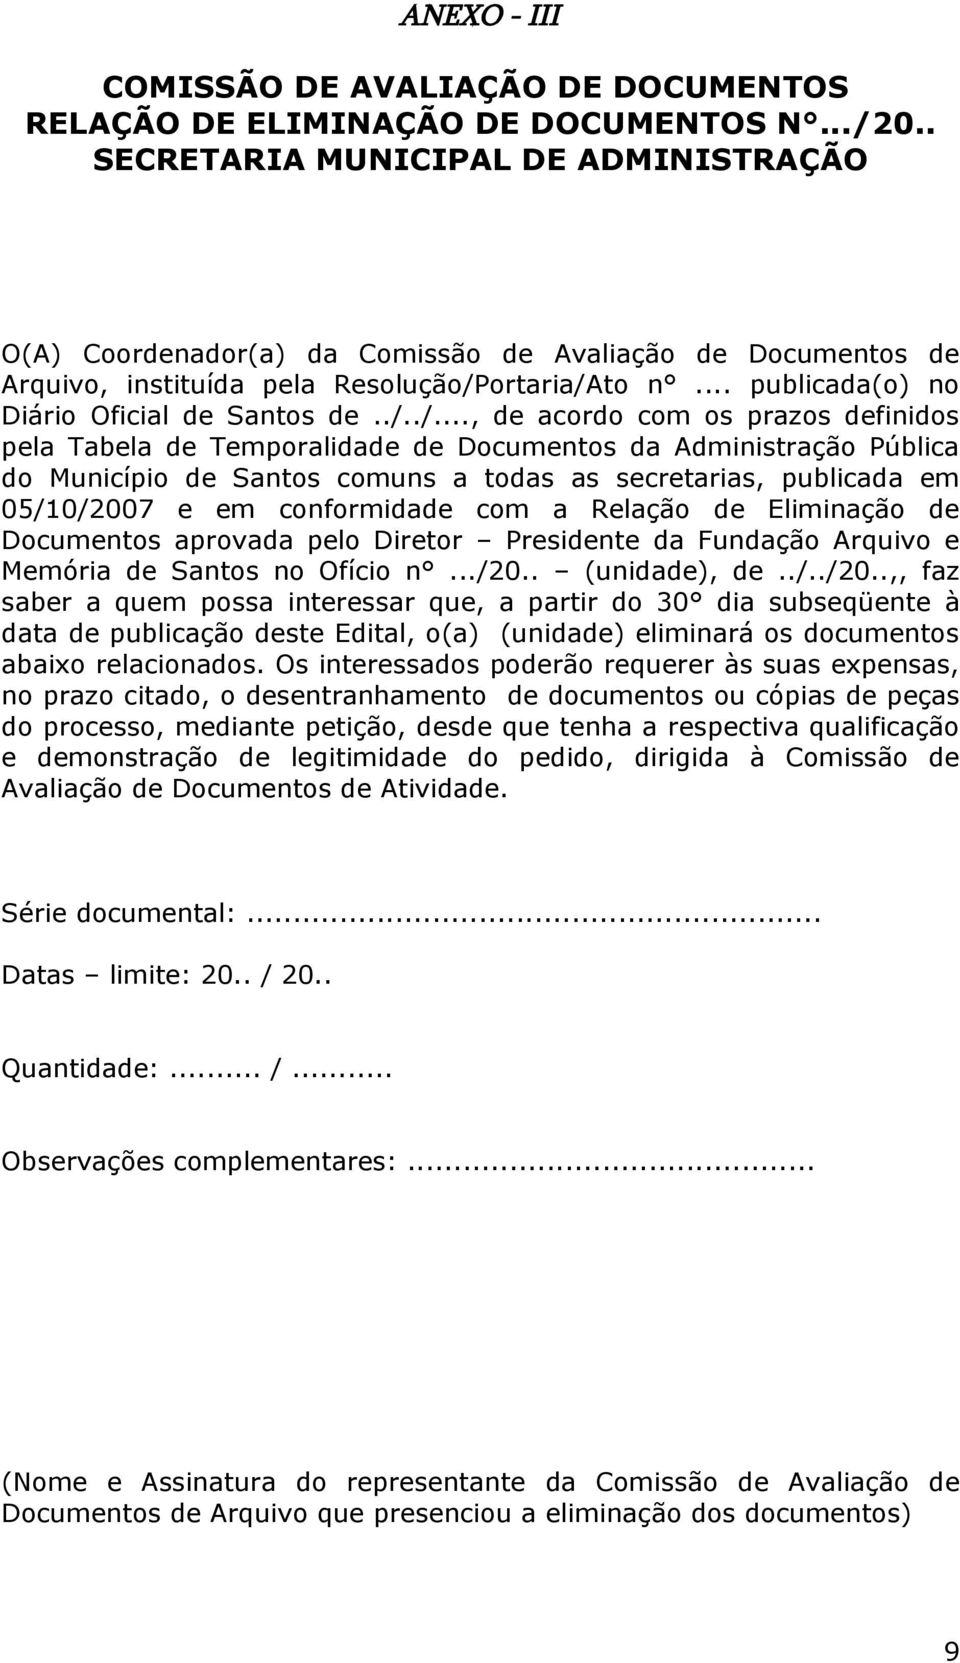 ./../..., de acordo com os prazos definidos pela Tabela de Temporalidade de Documentos da Administração Pública do Município de Santos comuns a todas as secretarias, publicada em 05/10/2007 e em